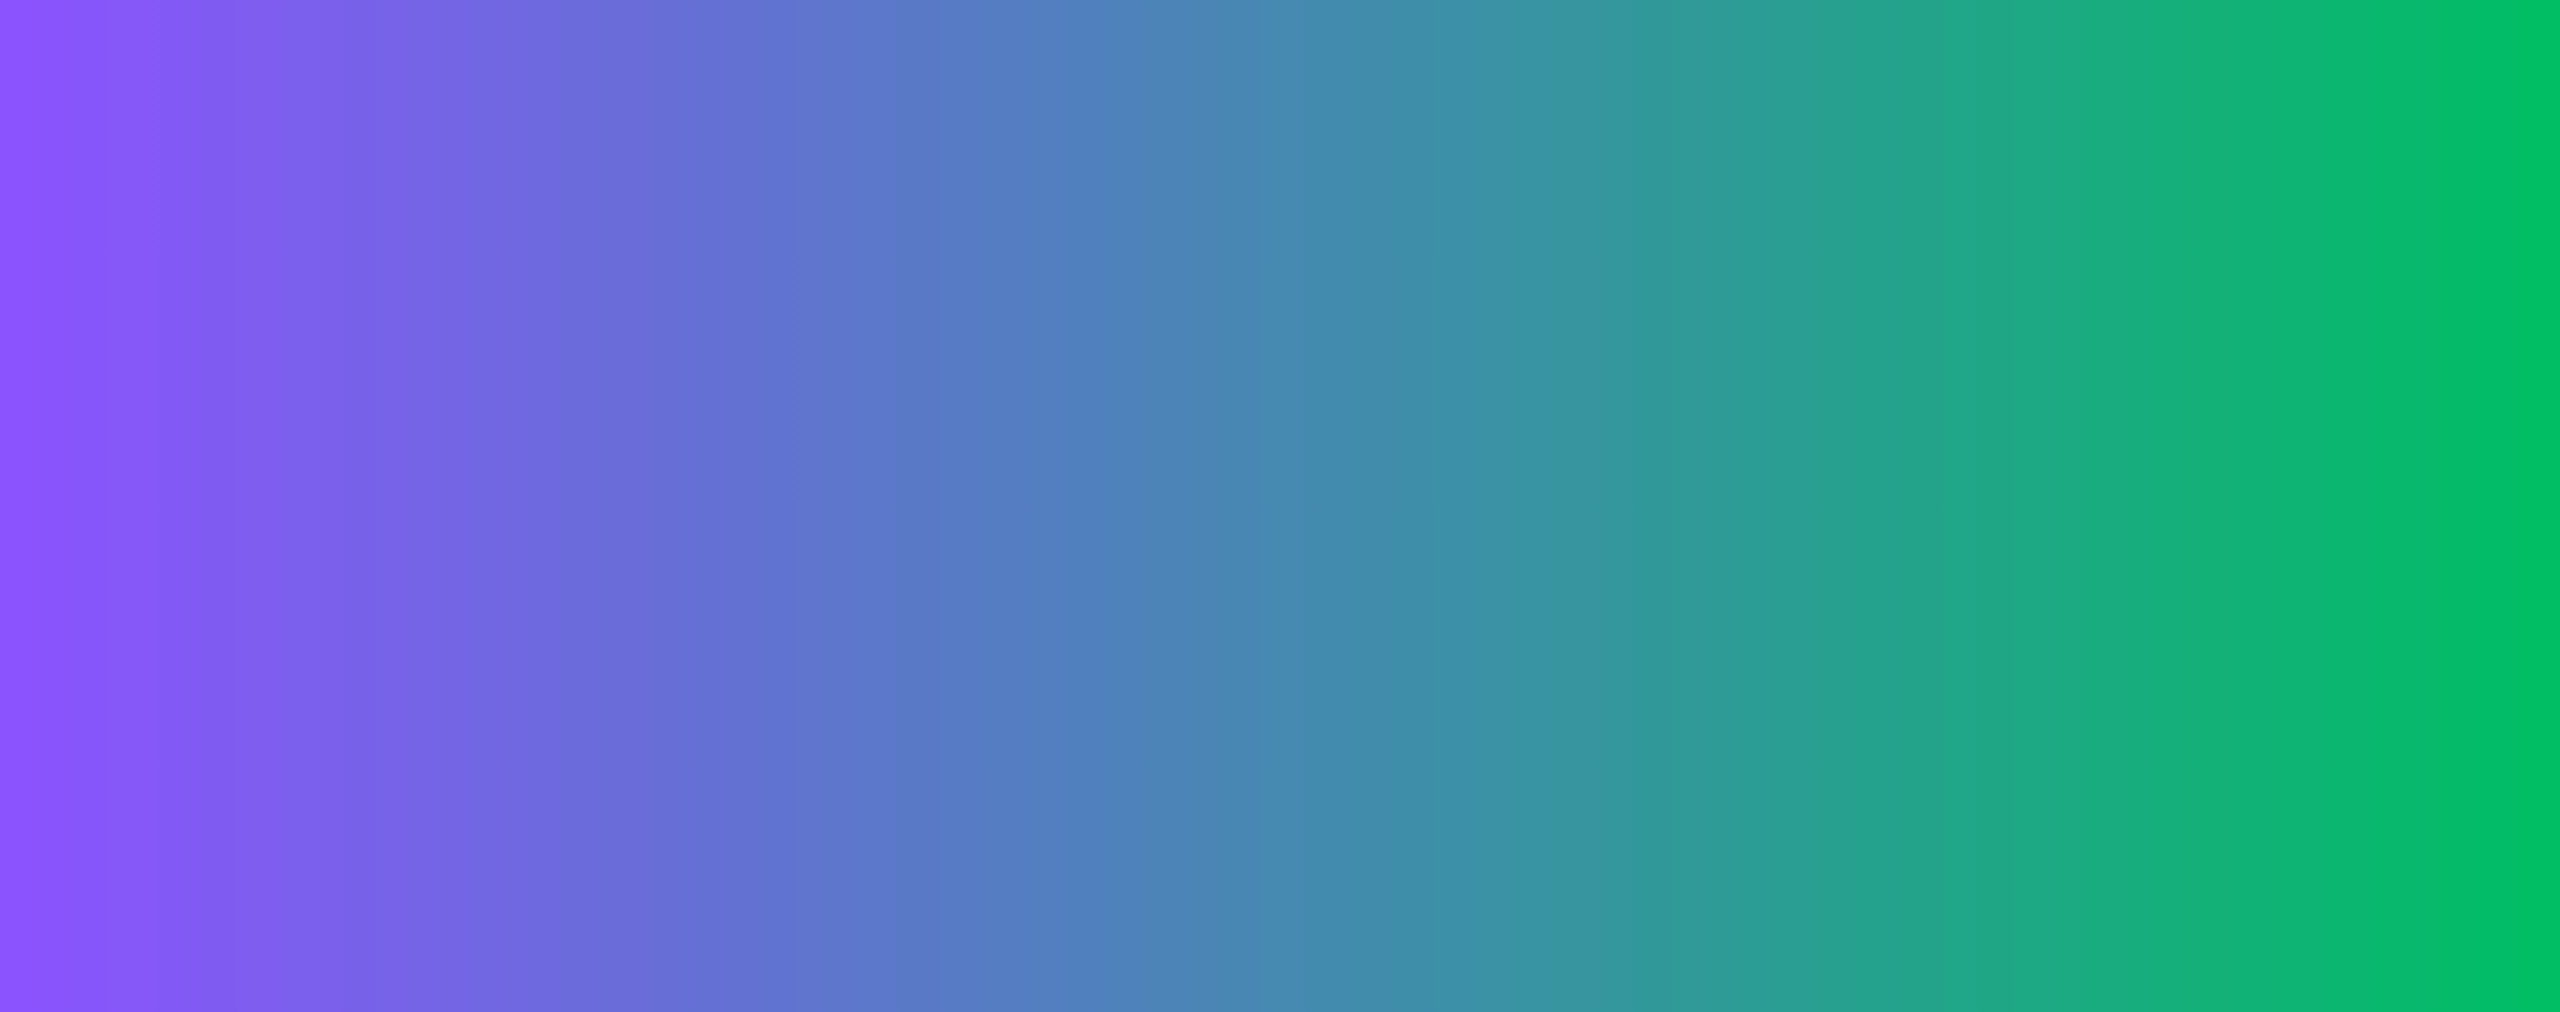 gradient colour background